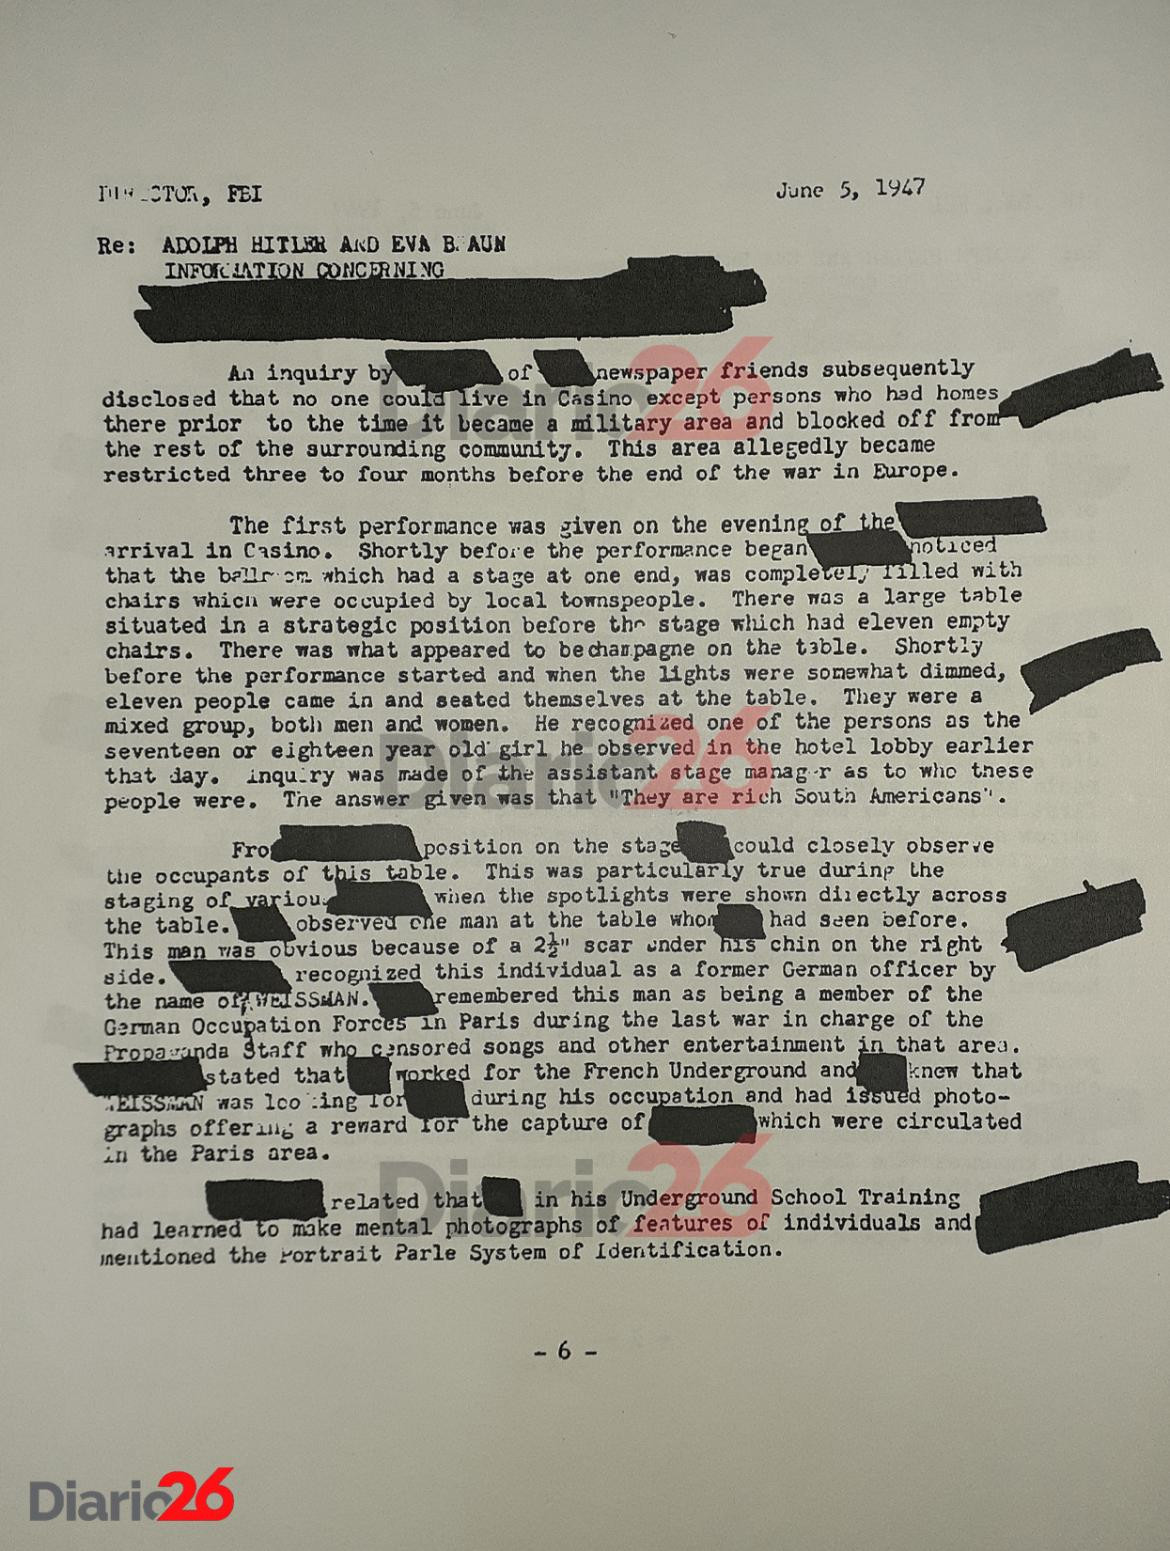 Adolf Hitler en Brasil, Hotel Atlántico, Cassino, documento desclasificado del FBI de 1947 - 06